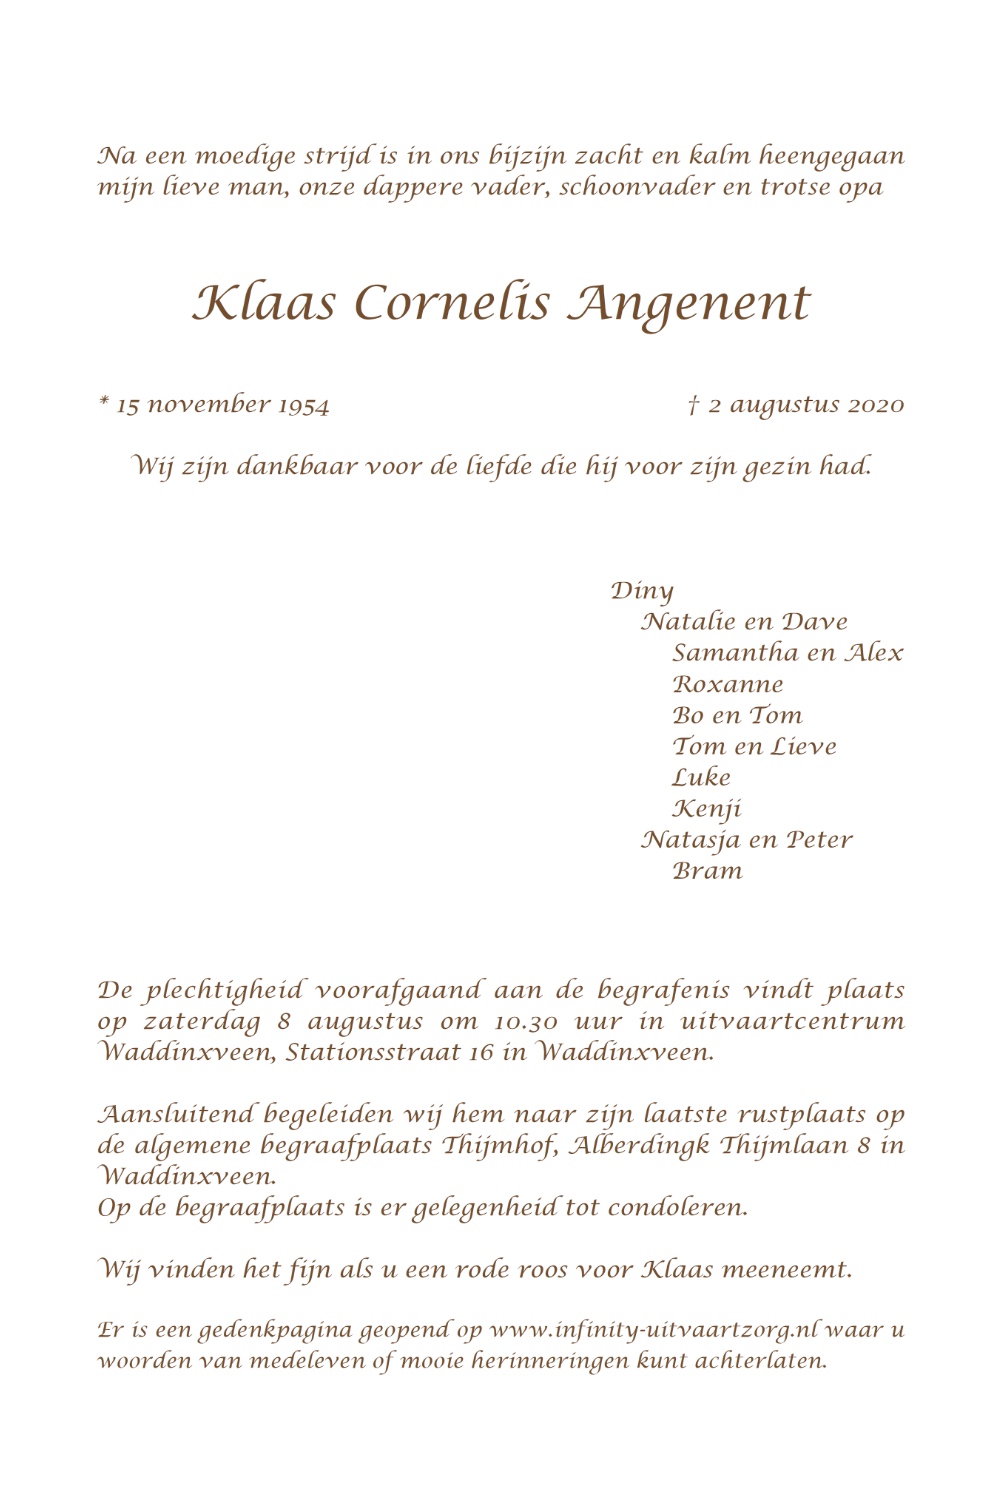 Klaas Cornelis Angenent rouwkaart binnen rechts